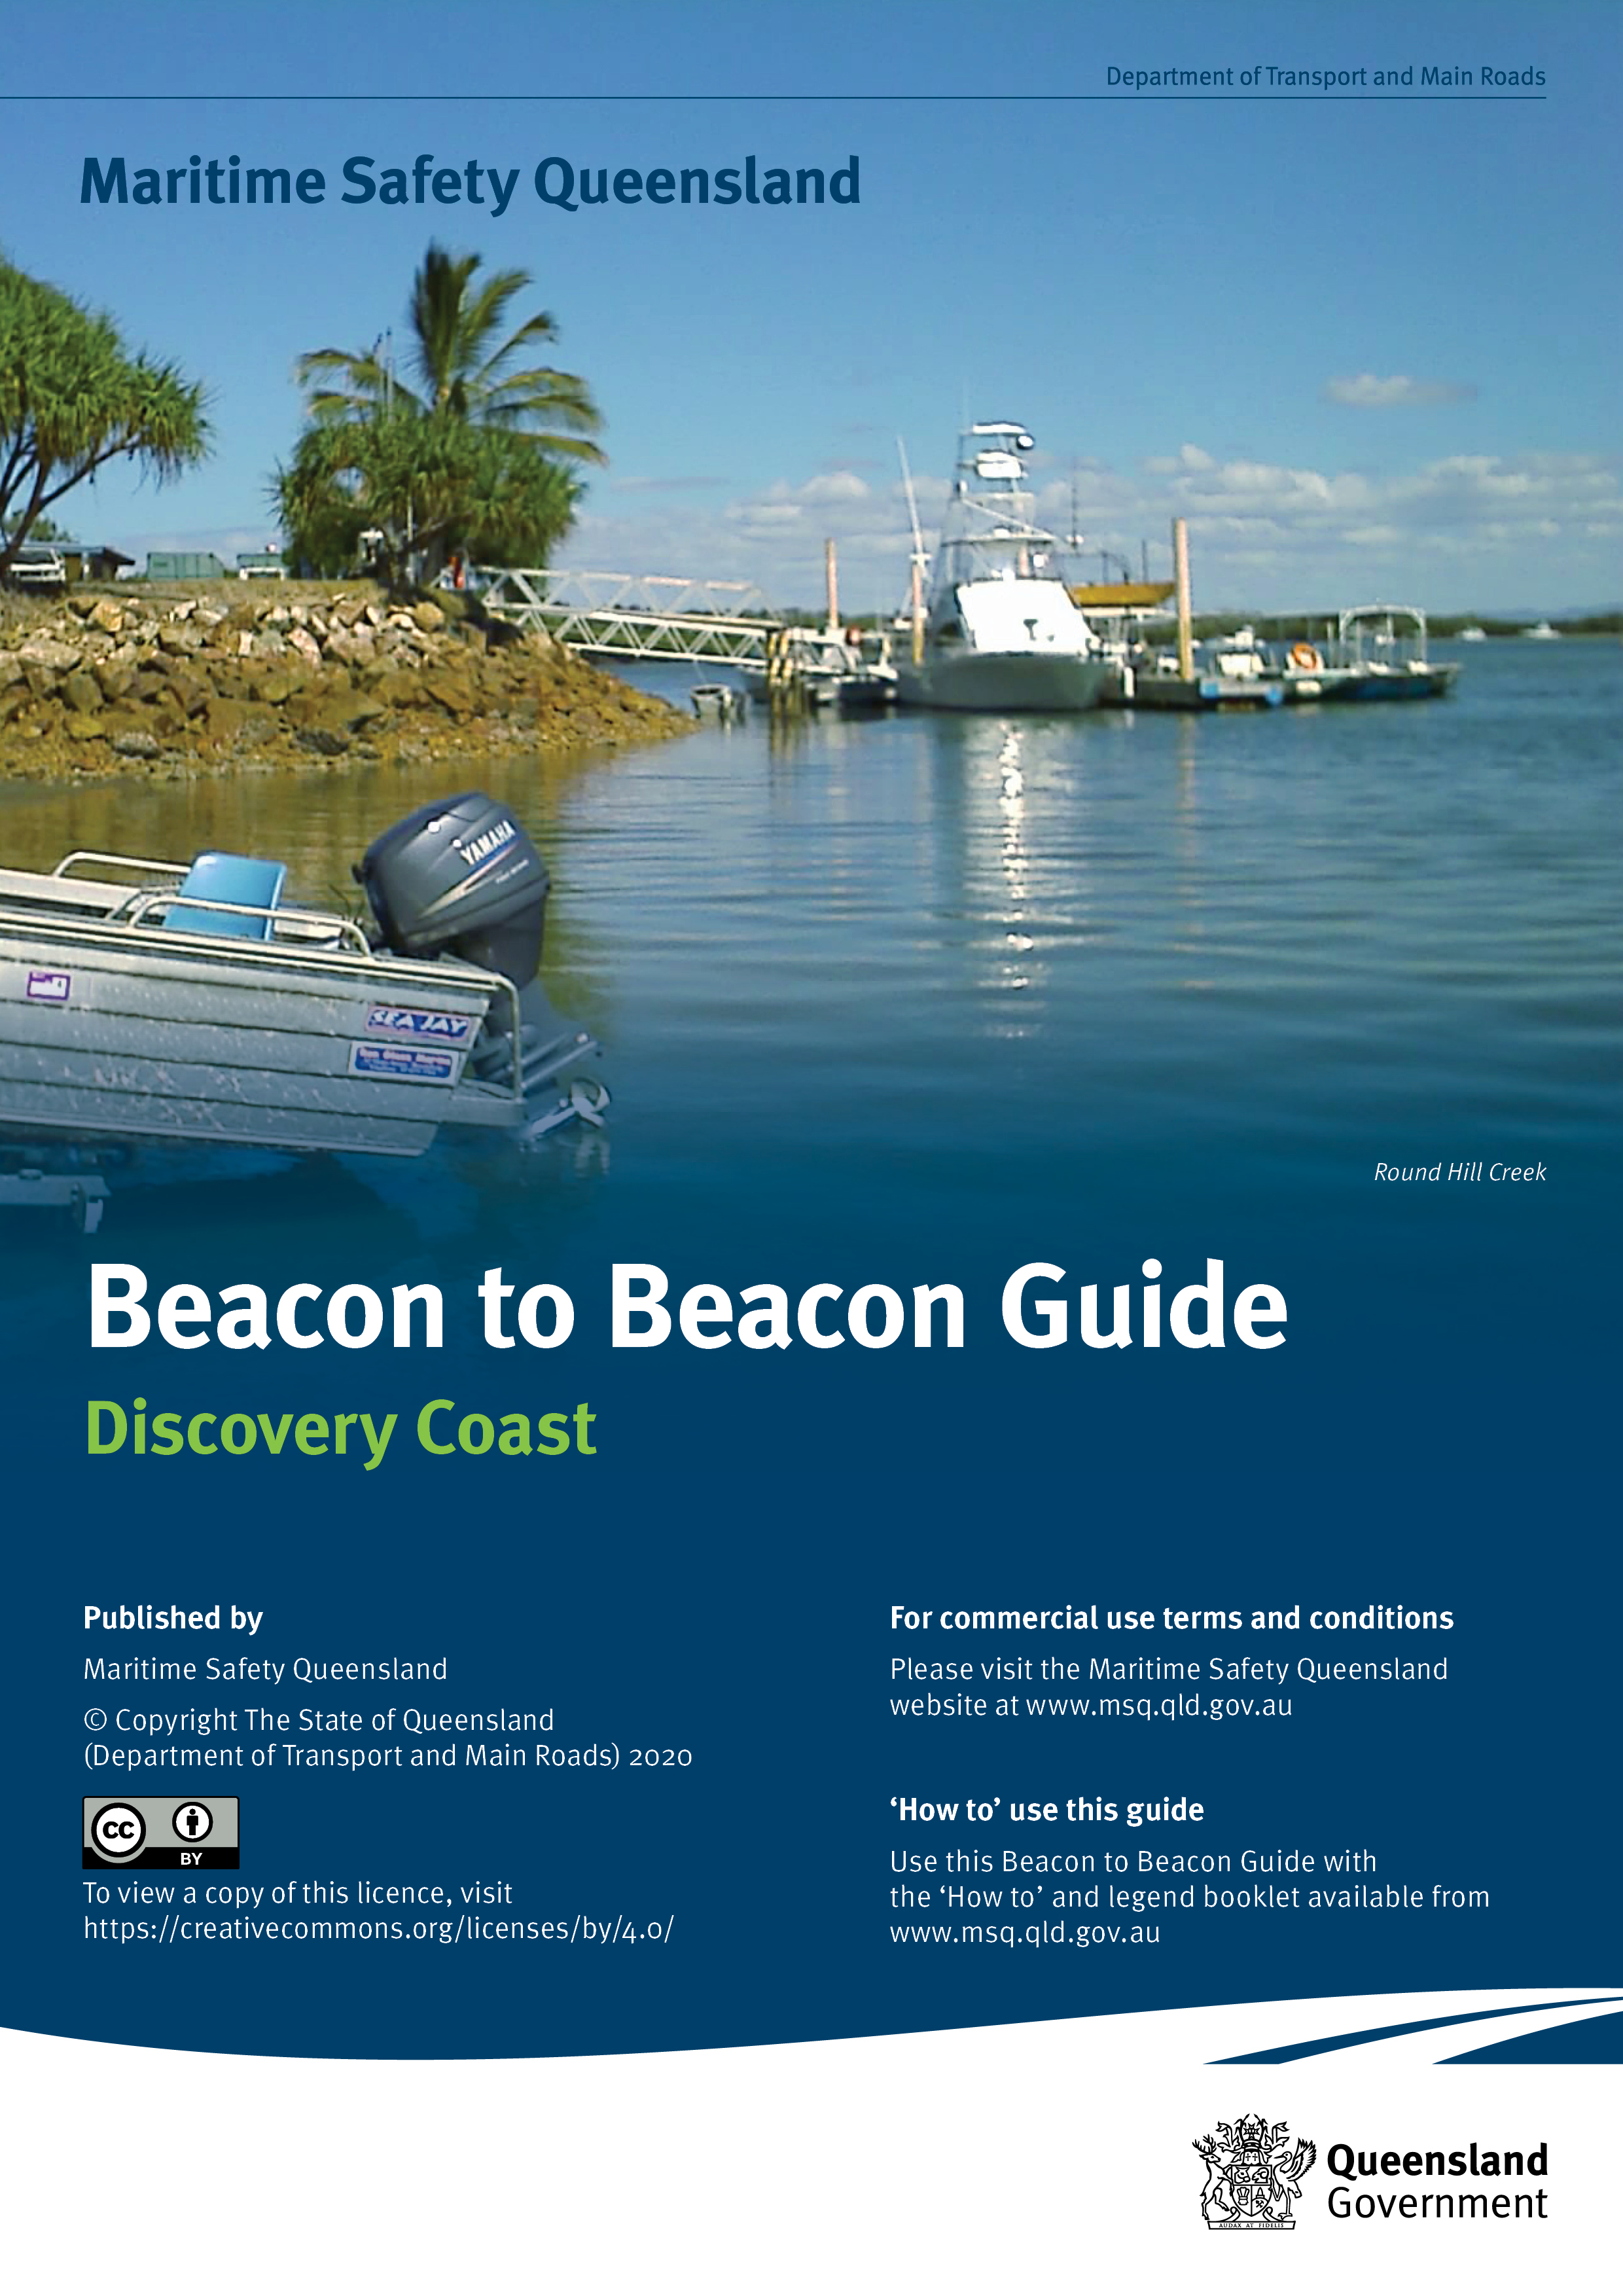 Beacon to Beacon Guide—Discovery Coast